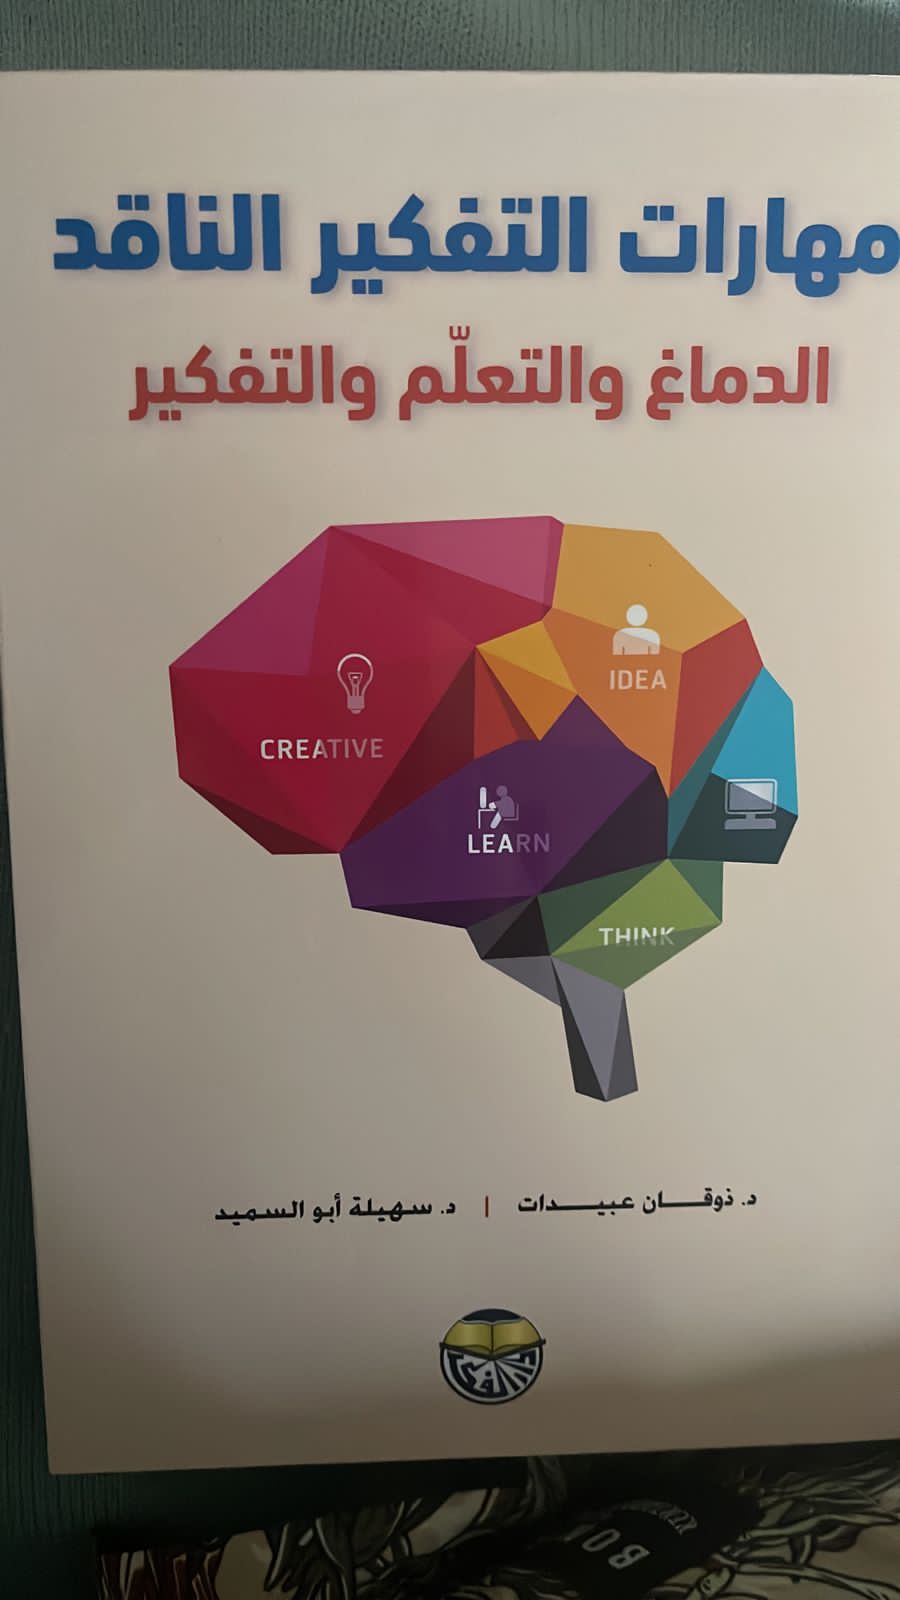 إصدار الطبعة الاولى من كتاب مهارات التفكير الناقد: الدماغ والتعلم والتفكير